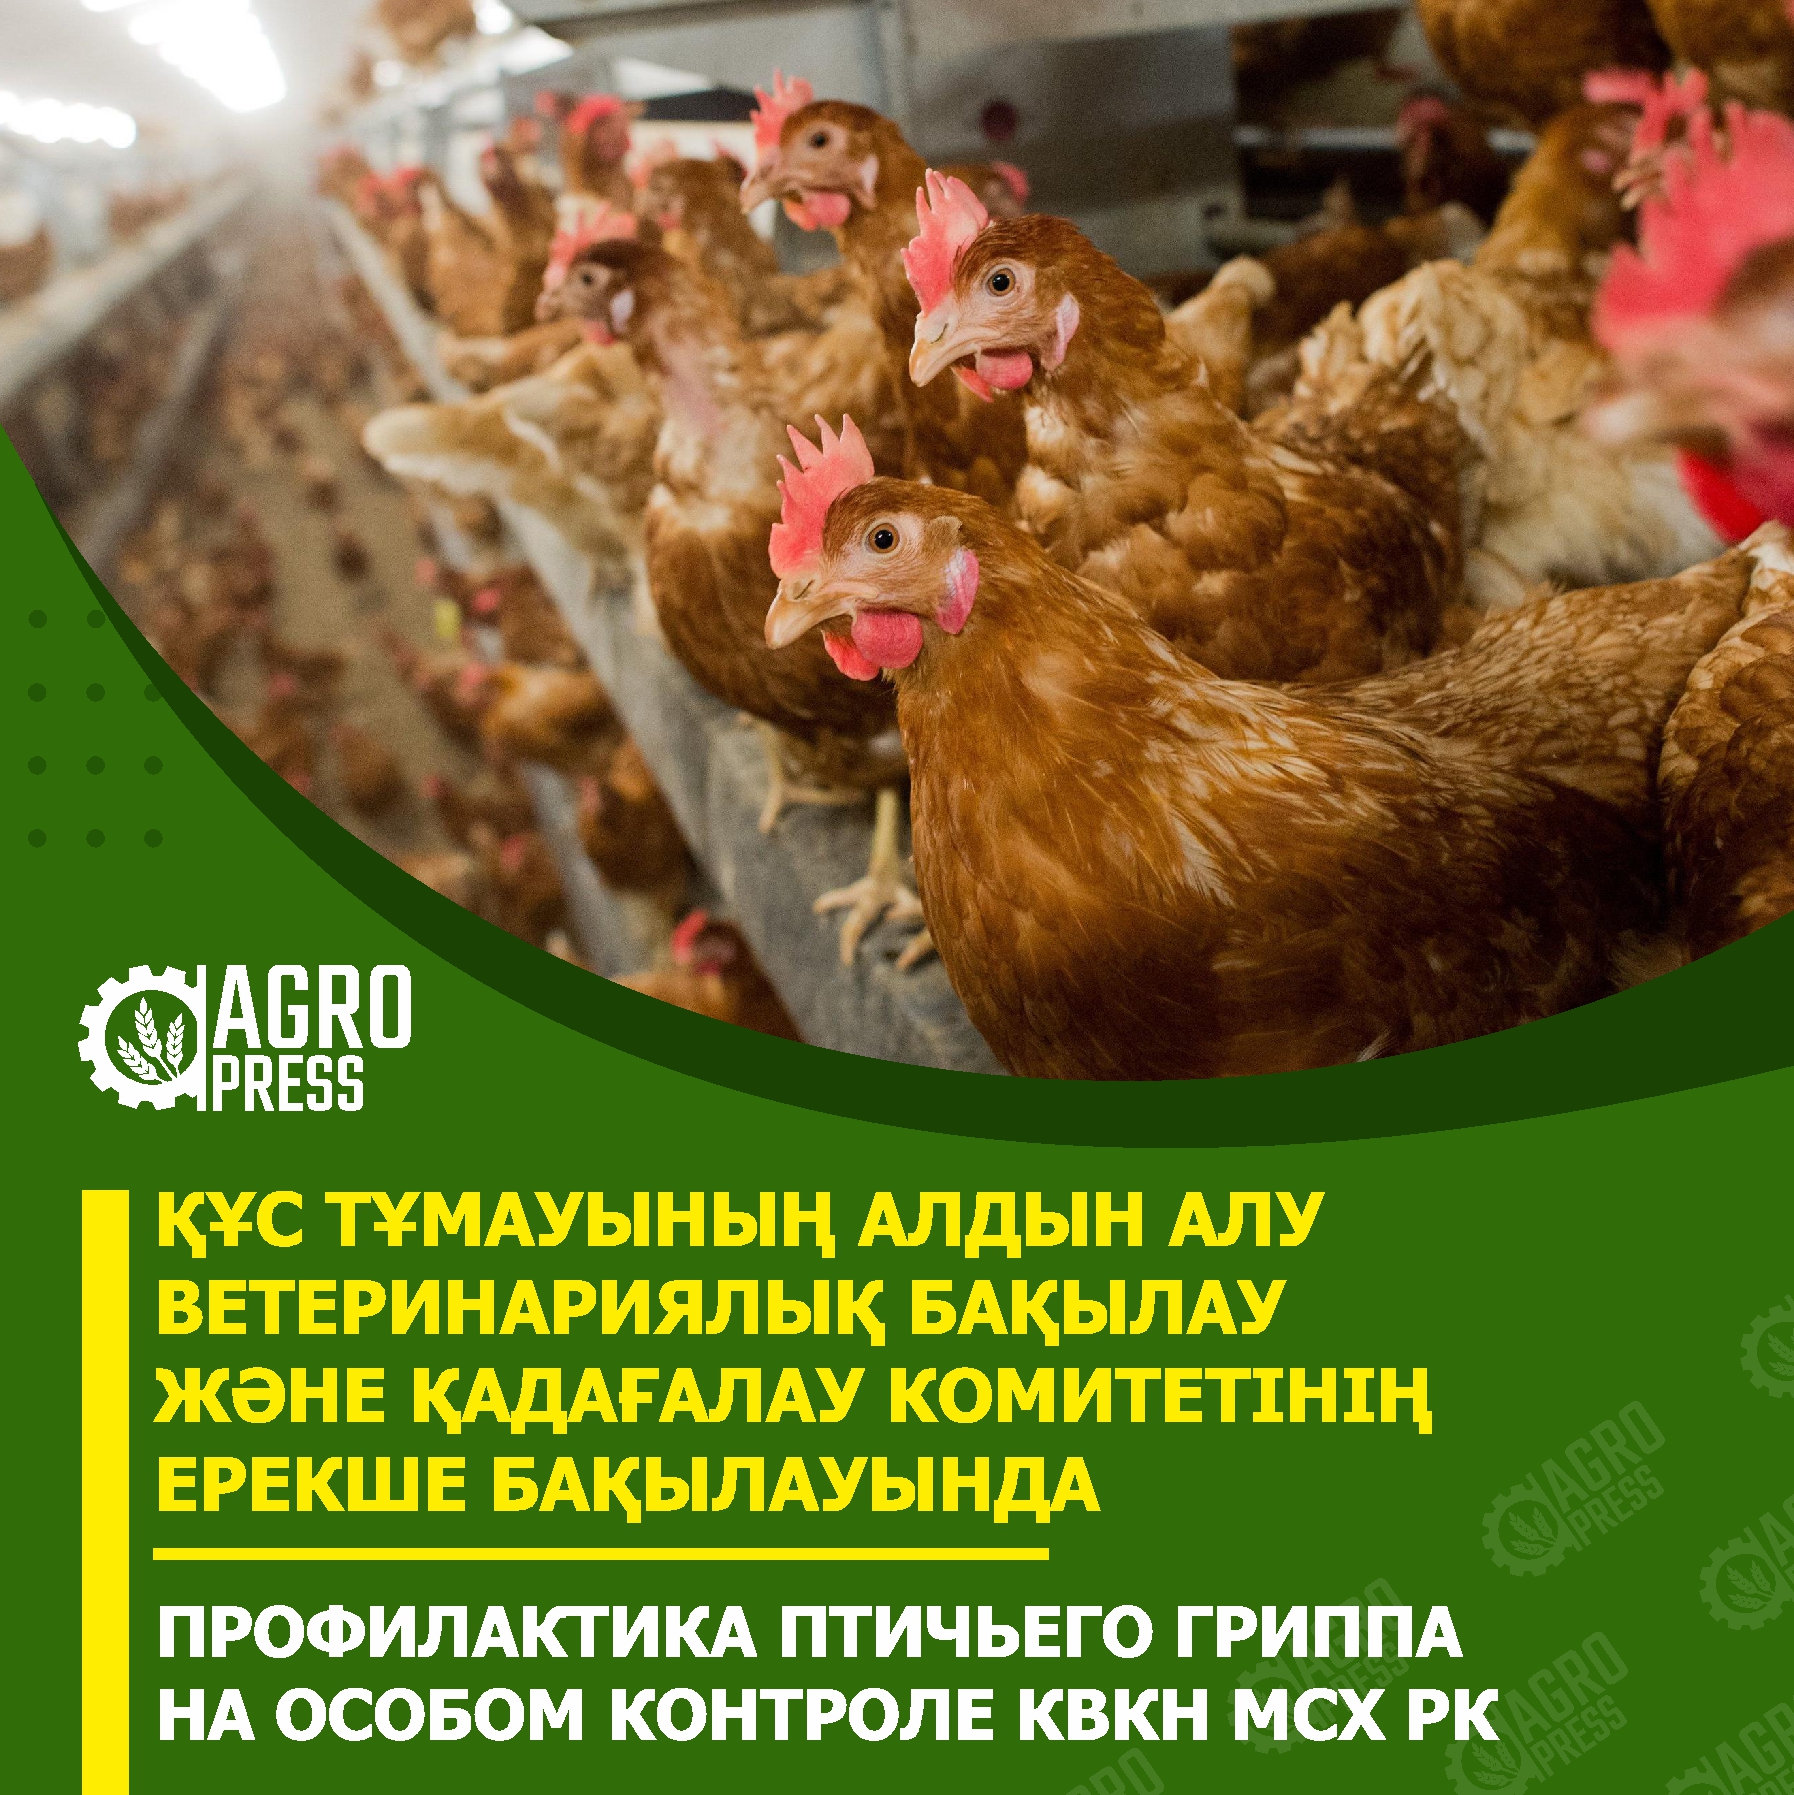 Профилактика птичьего гриппа на особом контроле КВКН МСХ РК